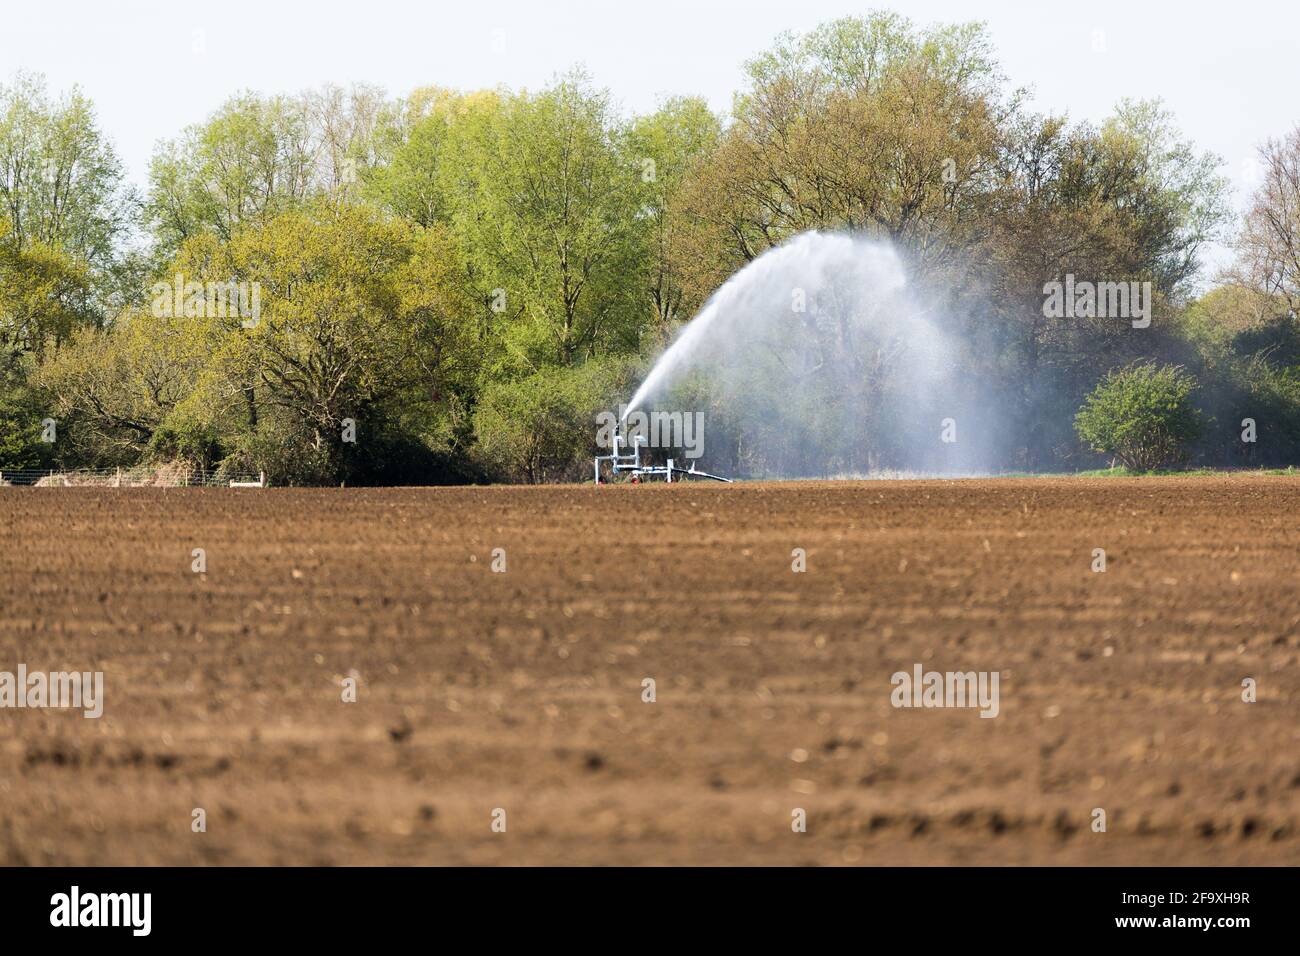 Bewässerung eines landwirtschaftlichen Feldes während der Corona-Pandemie. Landwirte arbeiten hart daran, die globalen Lebensmittelversorgungslinien offen zu halten Stockfoto